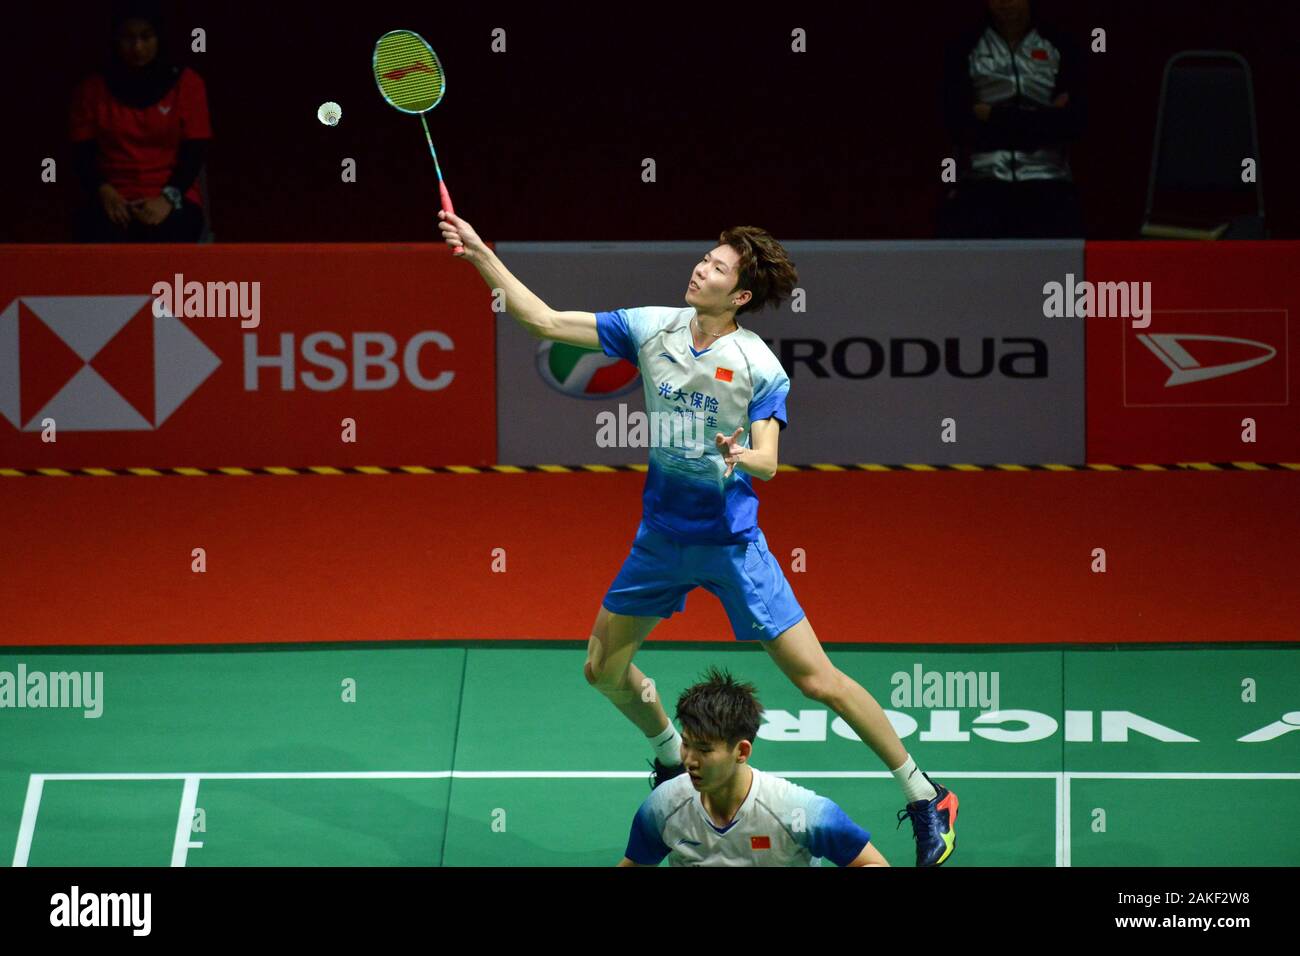 Malaysia vs china badminton